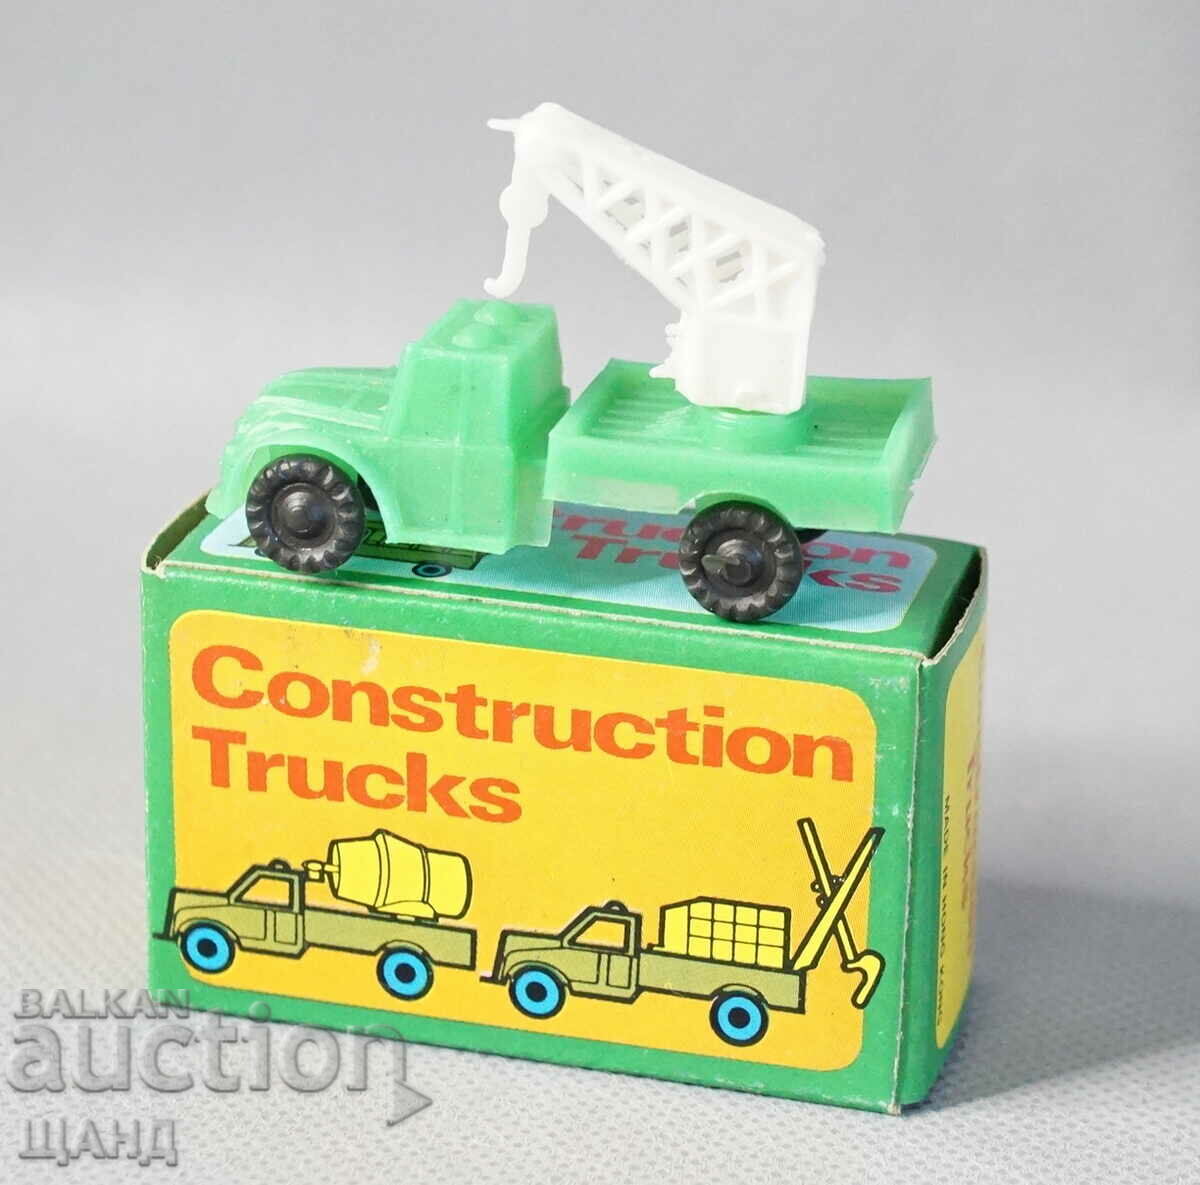 Παλιό Soc πλαστικό παιχνίδι μοντέλο γερανός φορτηγού με κουτί